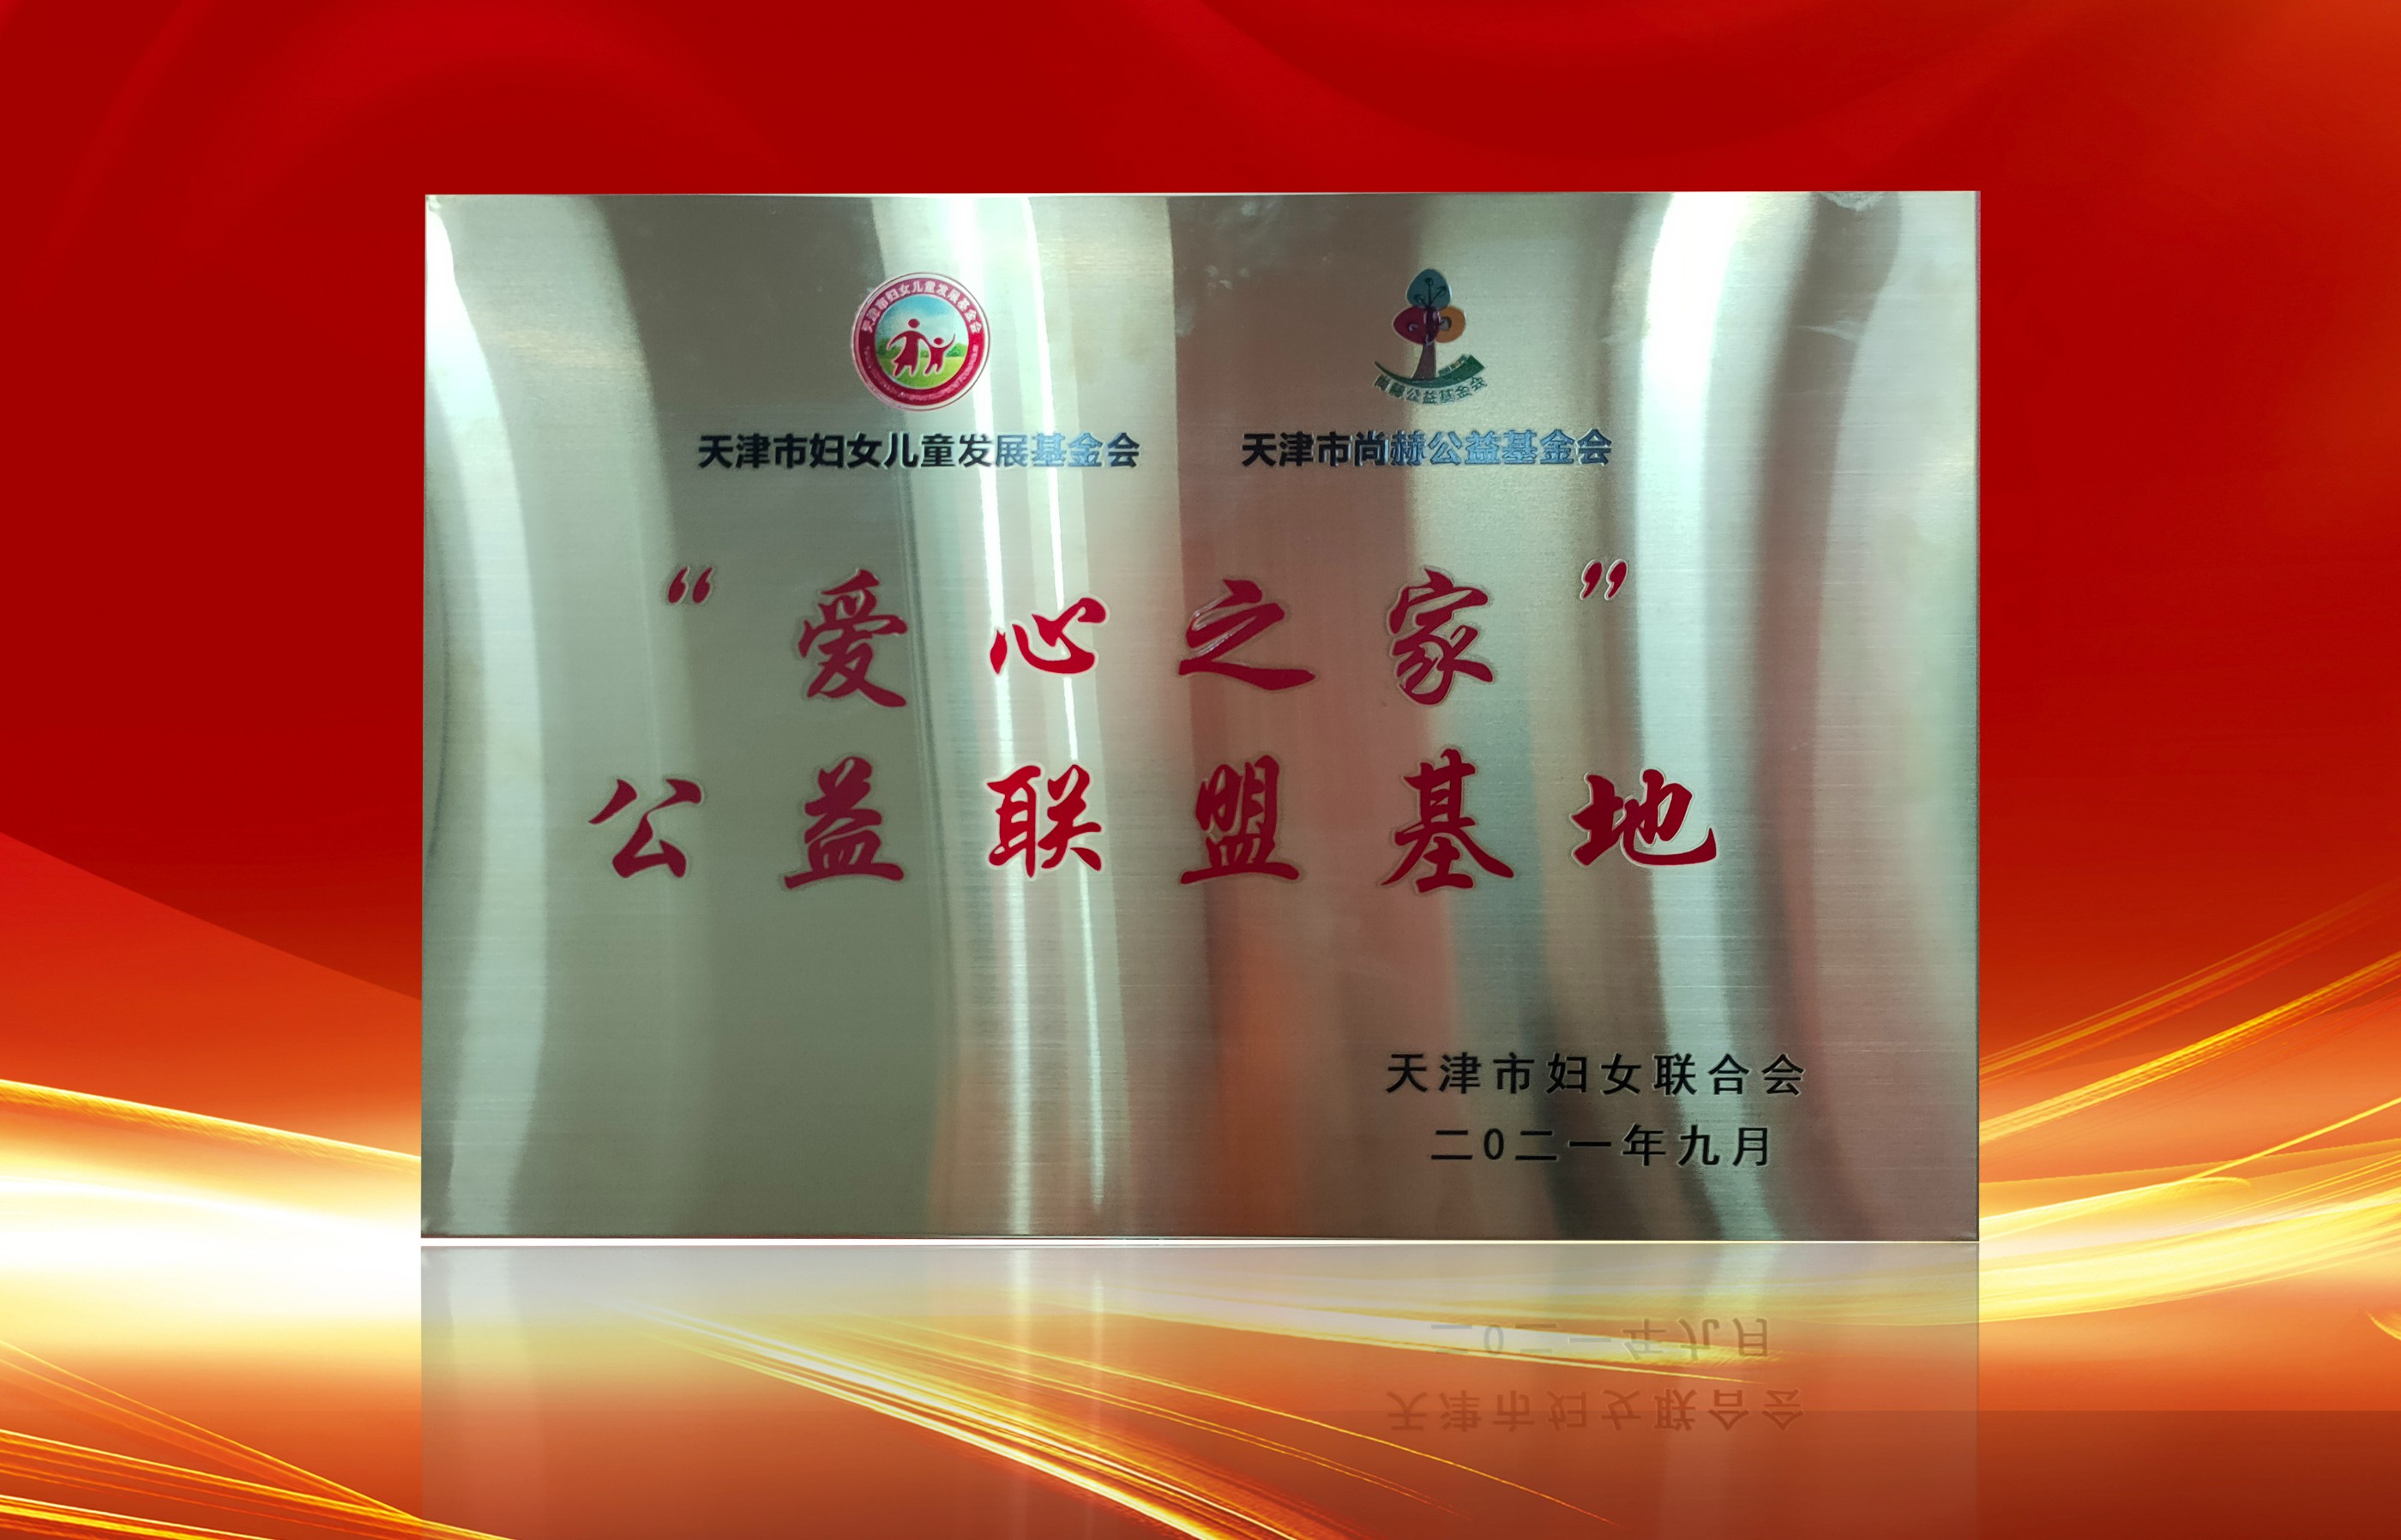 2021年9月-皇家体育(中国)有限责任公司公司荣获-天津市妇女联合会-“爱心之家”公益联盟基地奖牌